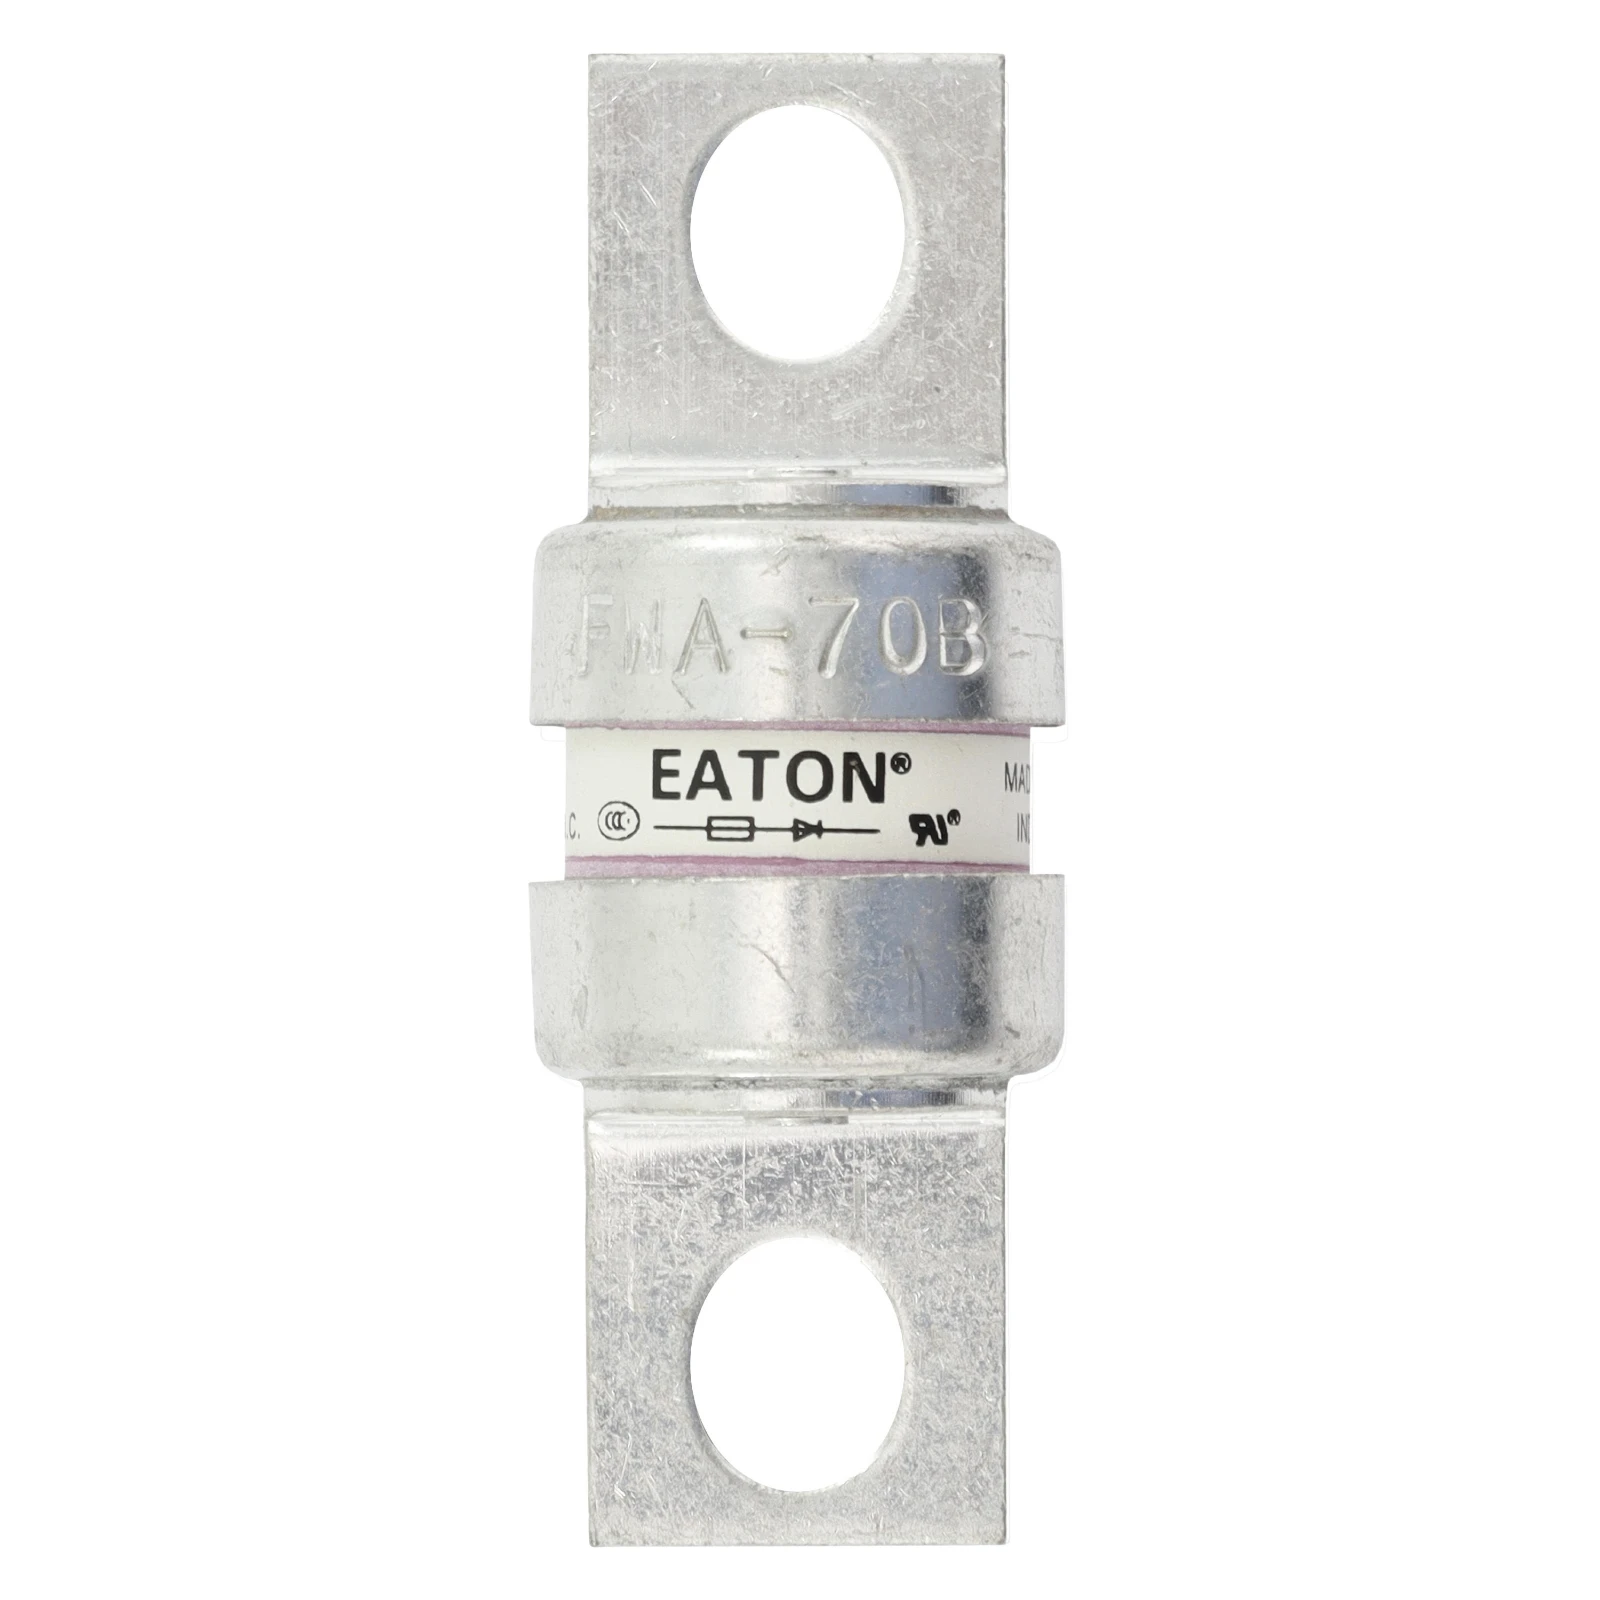 2545366 - Eaton SEMI-COND FUSE 70A150V AC